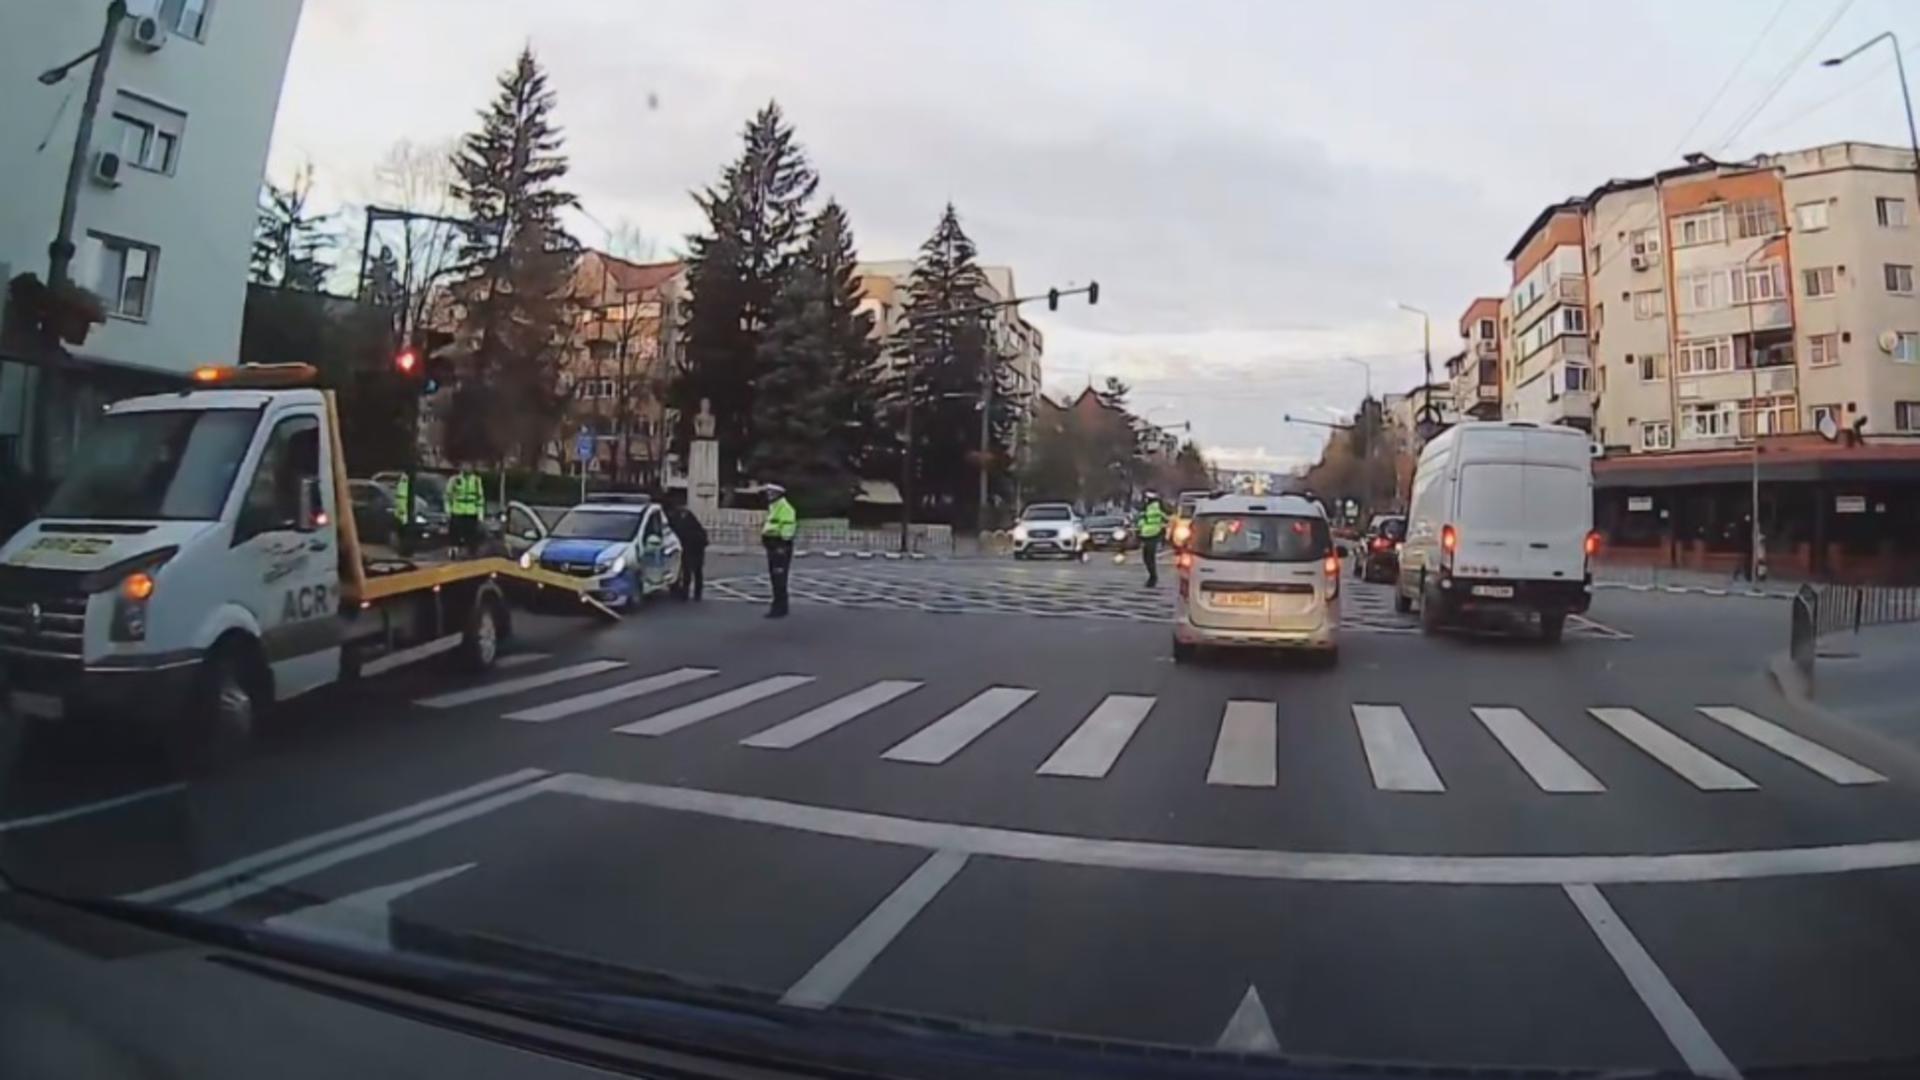 Carambol cu mașina poliției, în Vâlcea. Din fericire, nicio persoană nu a fost rănită VIDEO